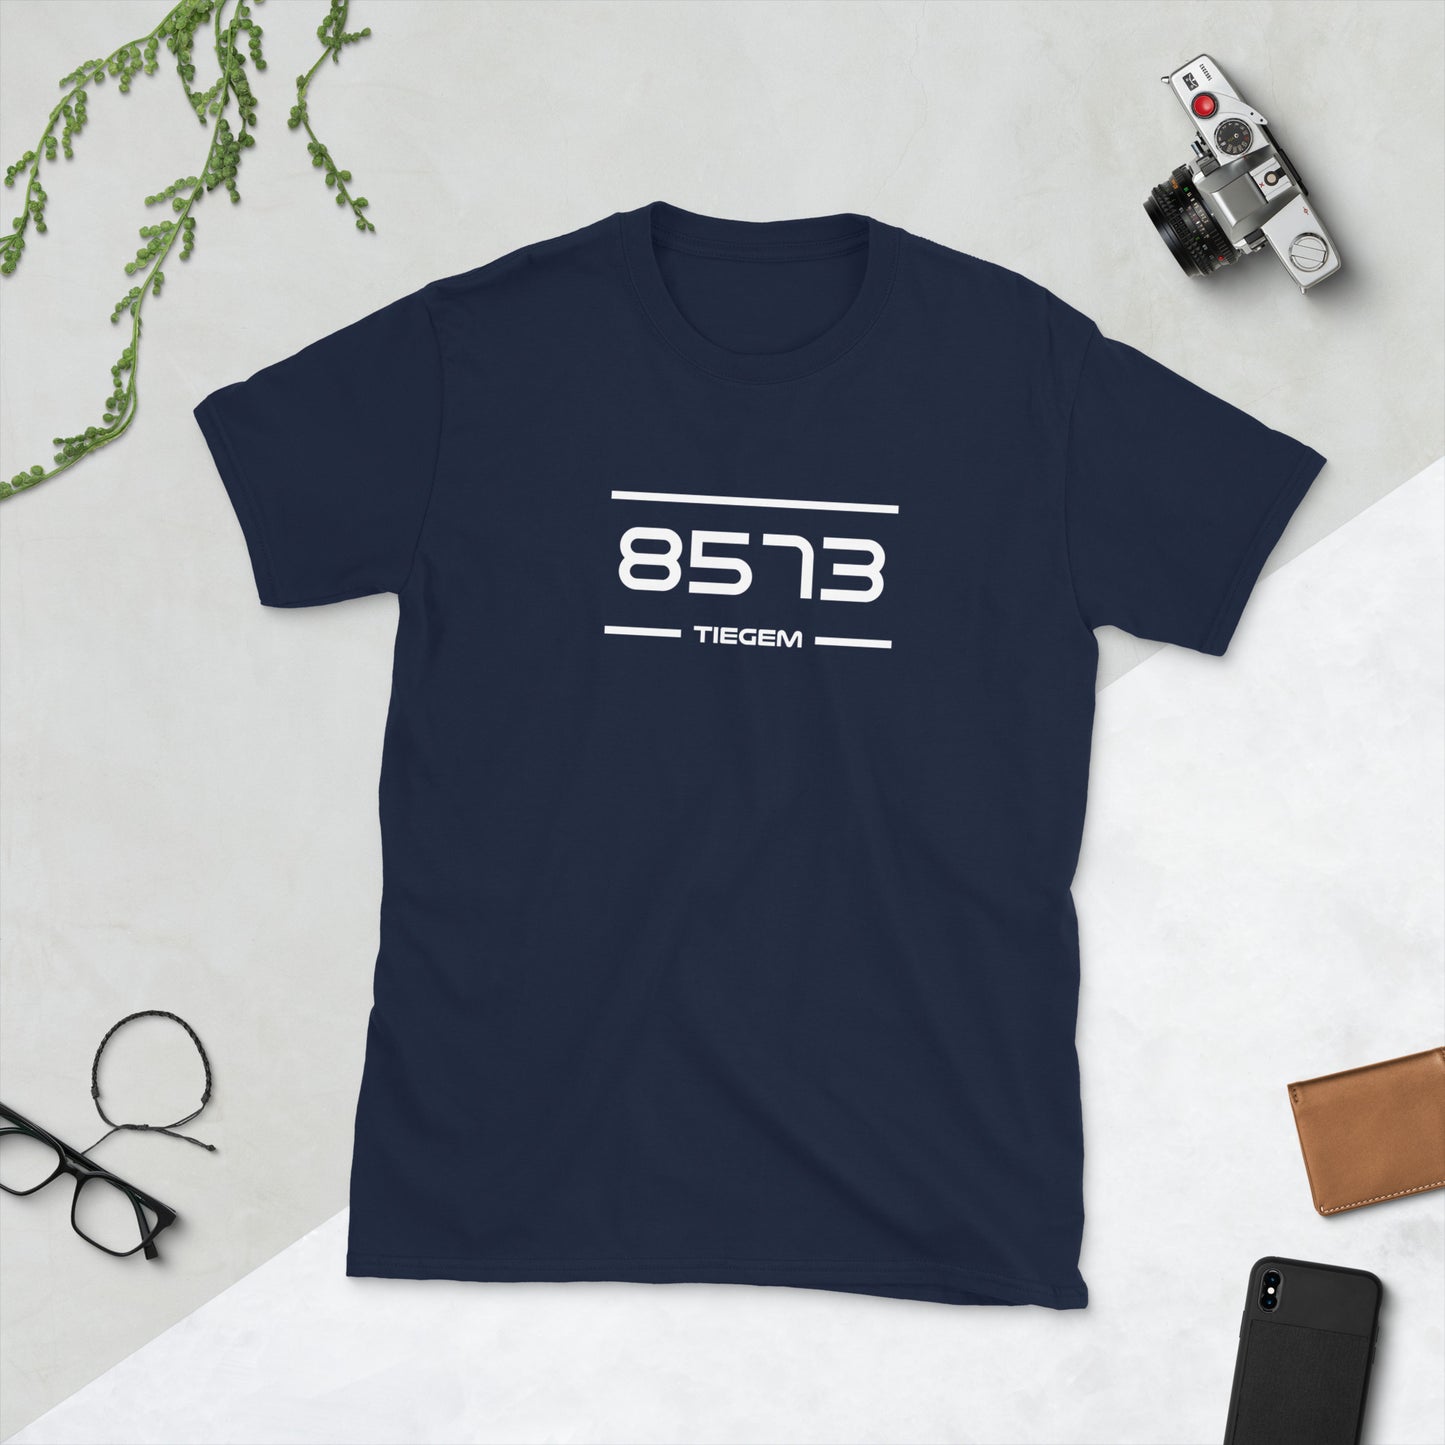 Tshirt - 8573 - Tiegem